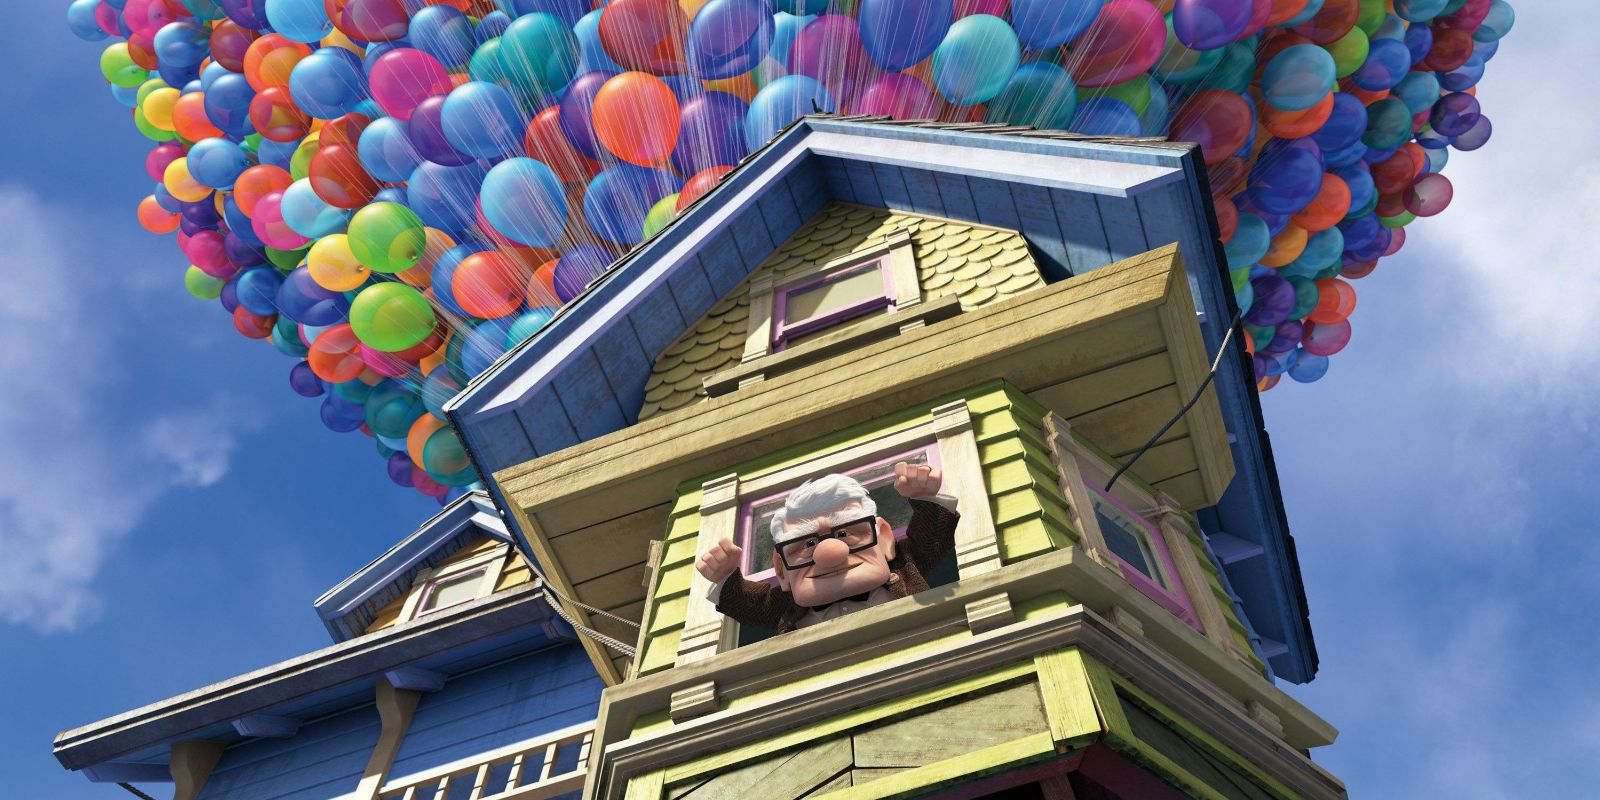 La casa de Carl de Pixar’s Up replicada usando más de 68,000 piezas de LEGO